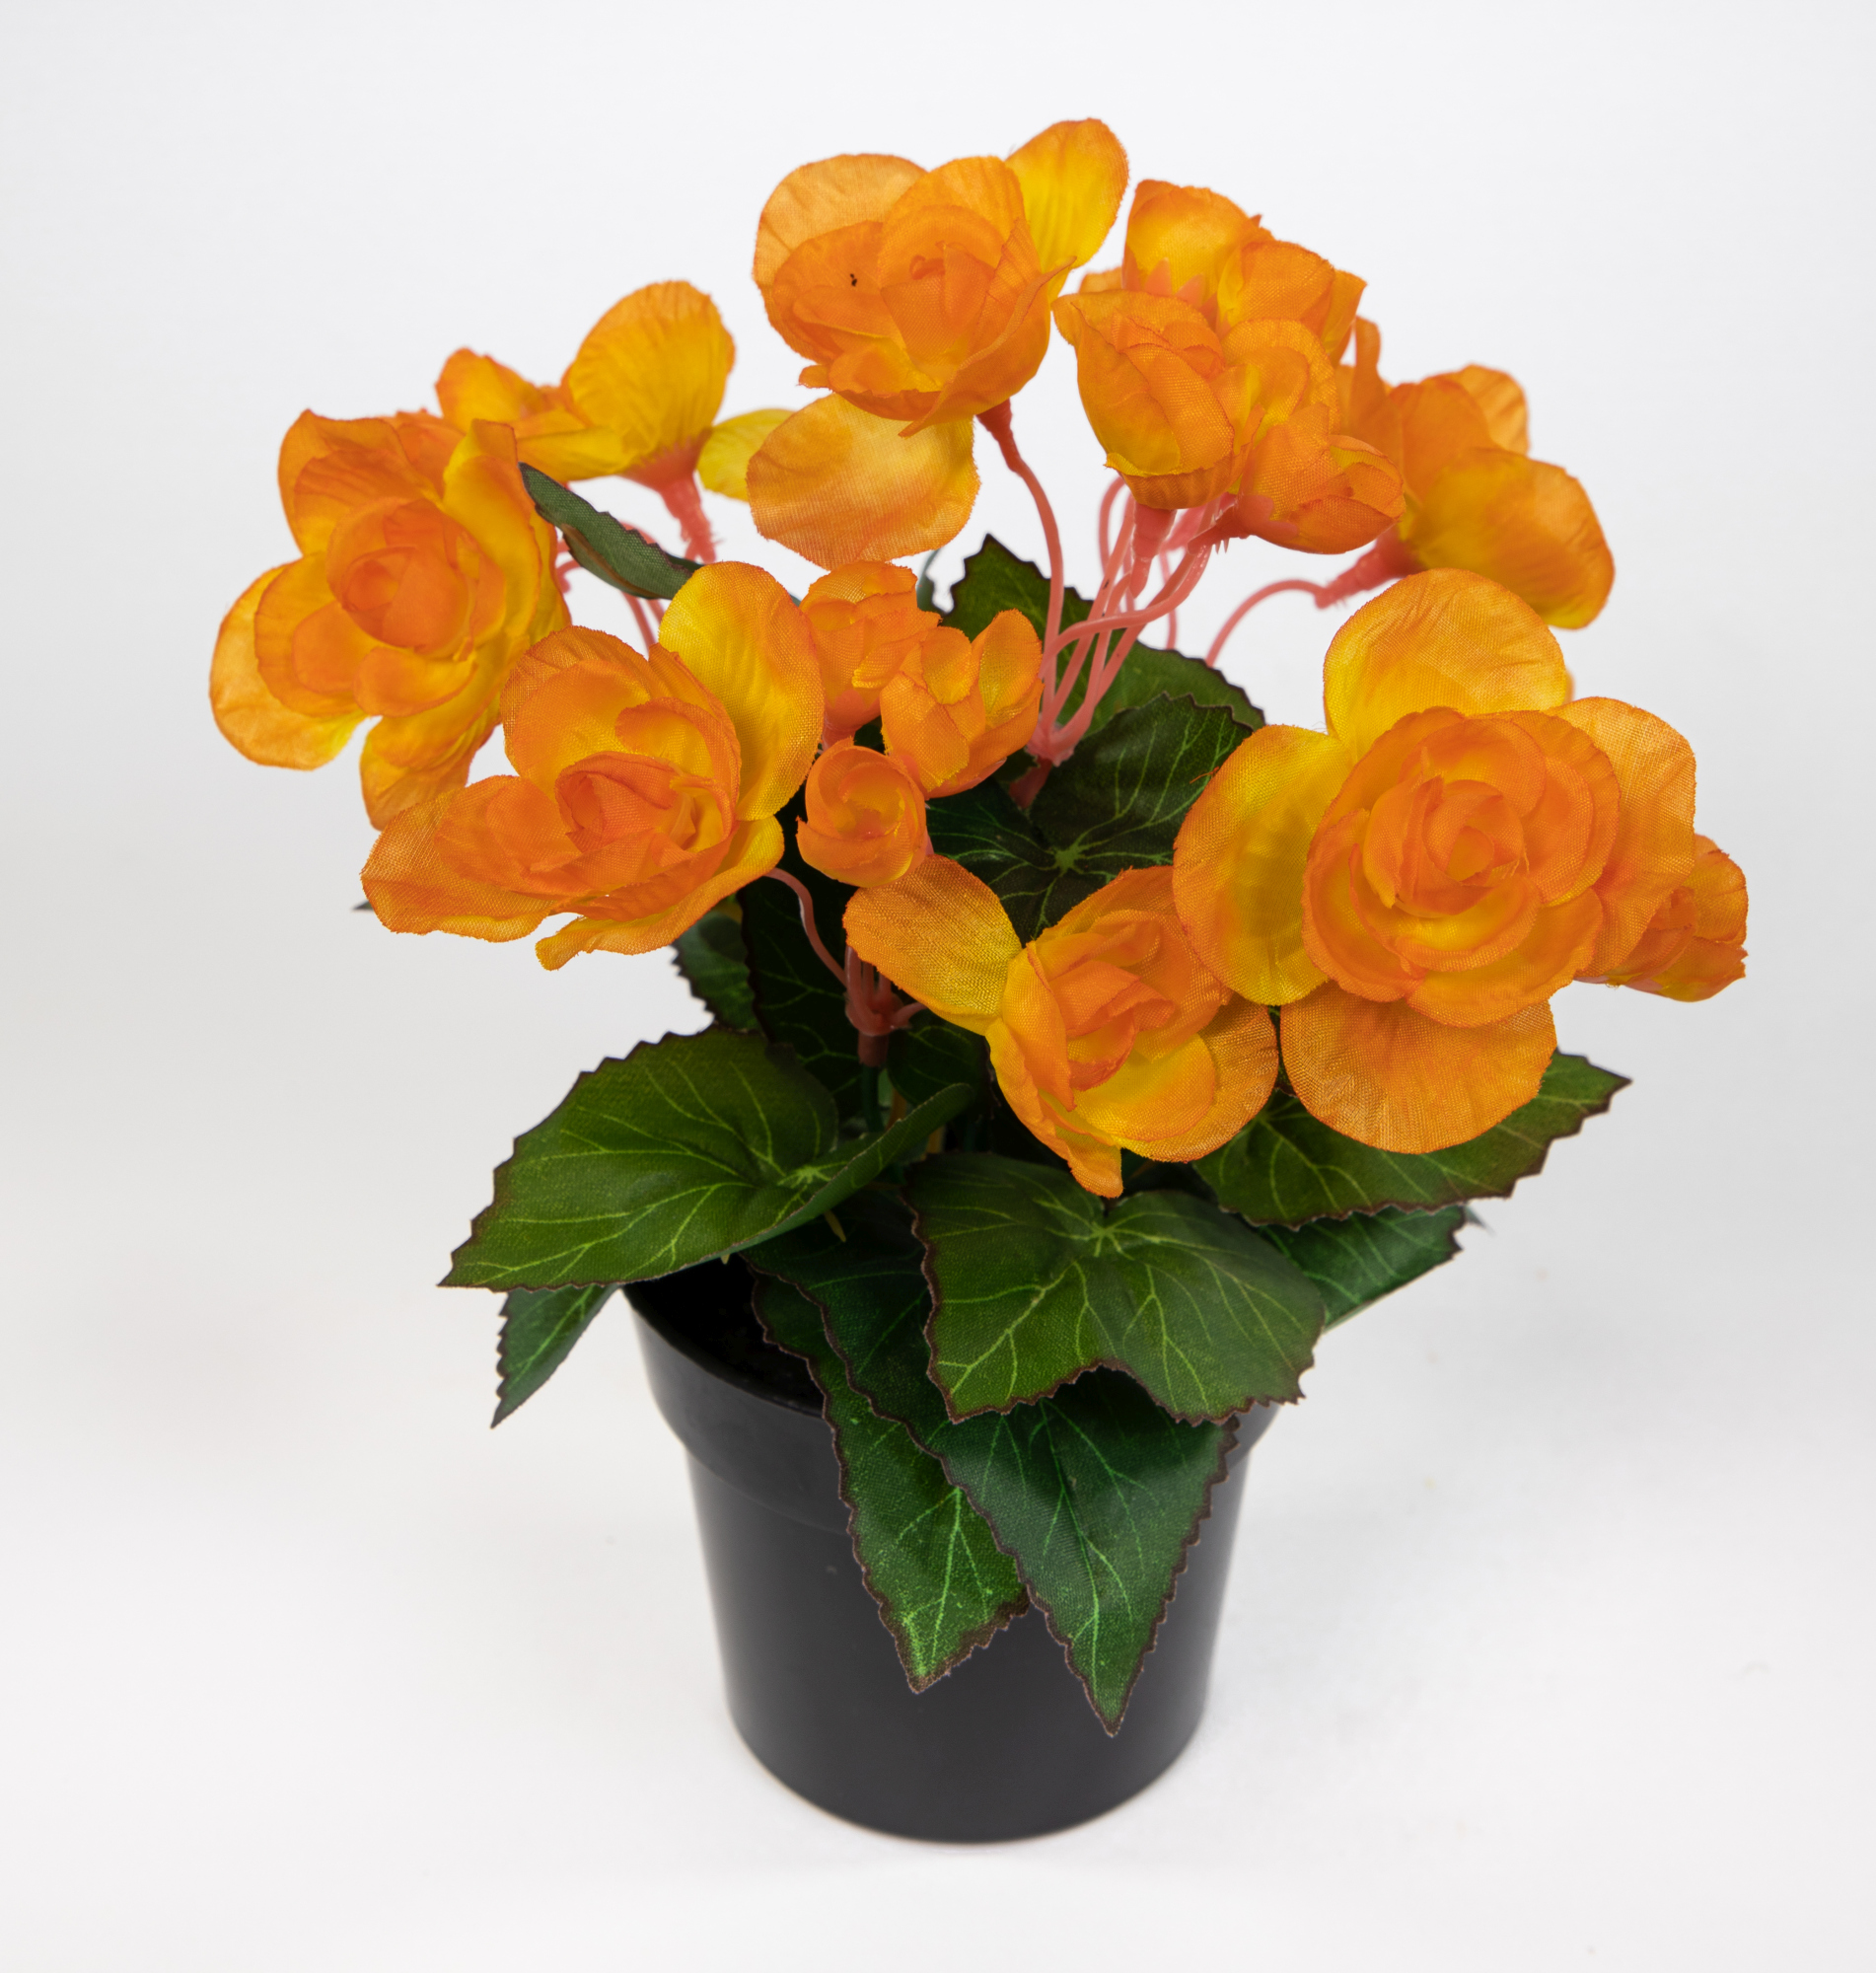 Begonie 20cm orange im Topf JA Kunstpflanzen Begonienbusch künstliche Blumen Pflanzen Kunstblumen